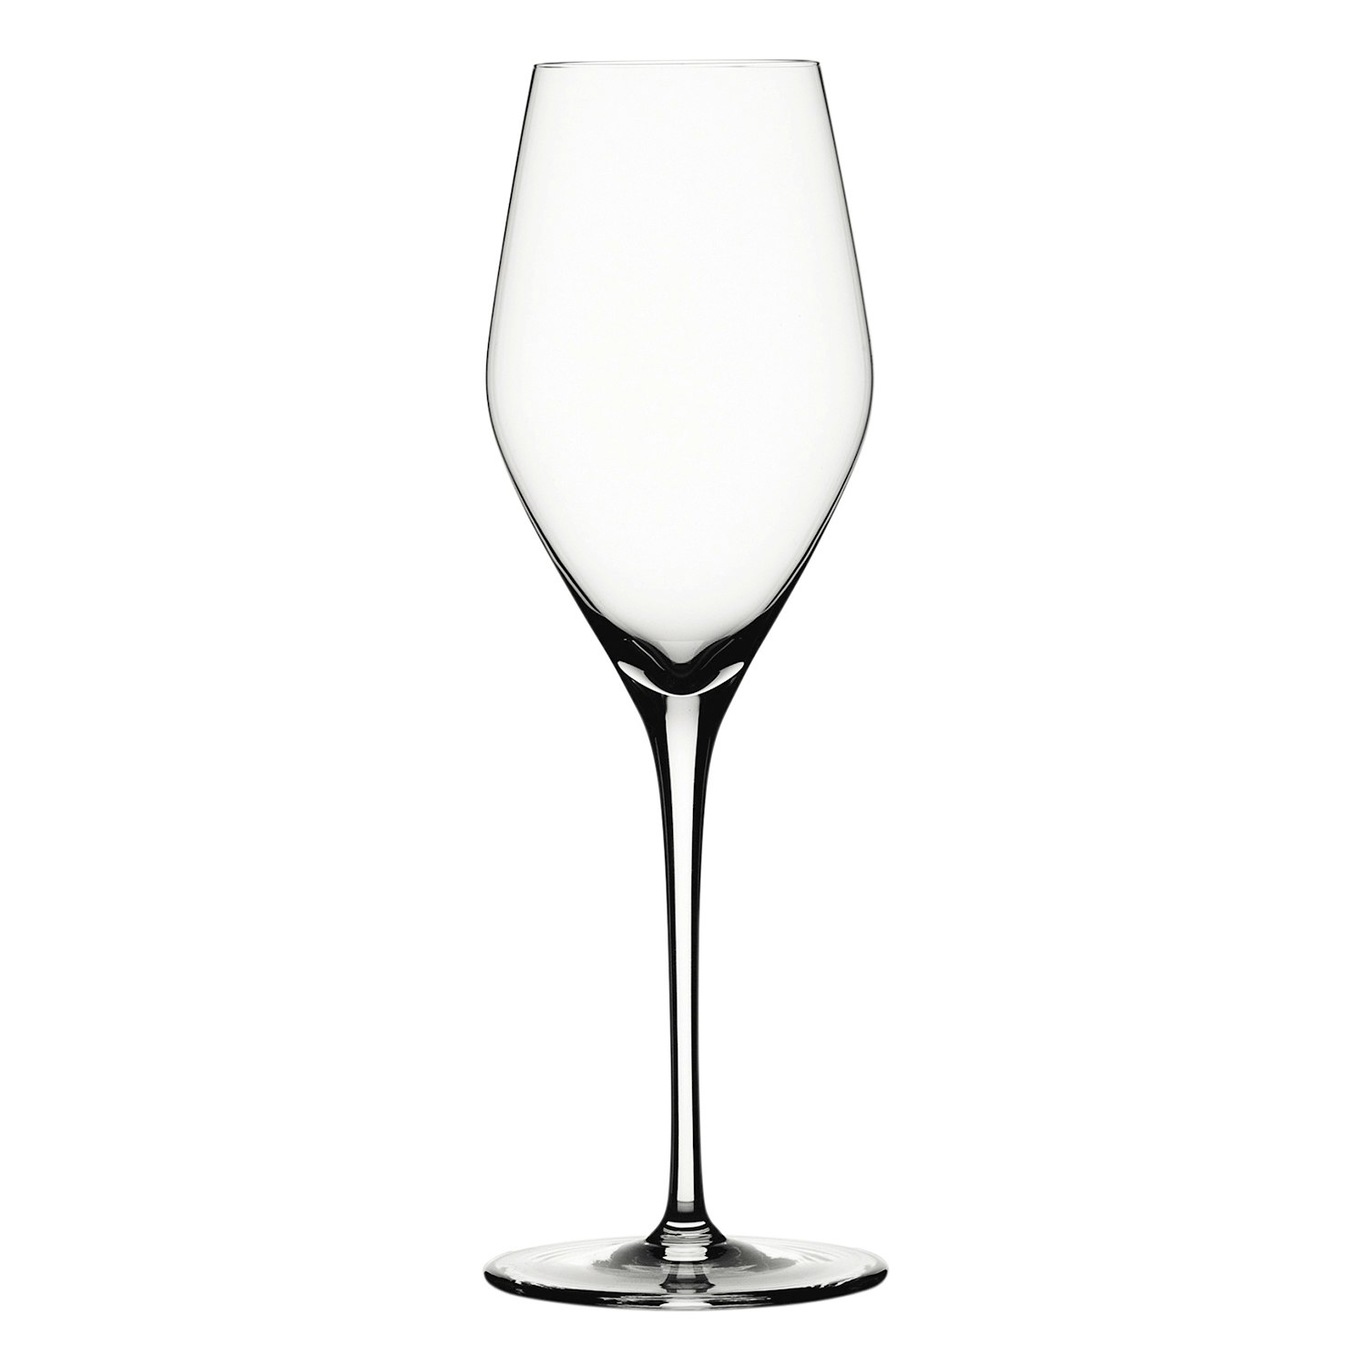 https://royaldesign.com/image/2/spiegelau-special-glasses-prosecco-27cl-set-of-4-0?w=800&quality=80